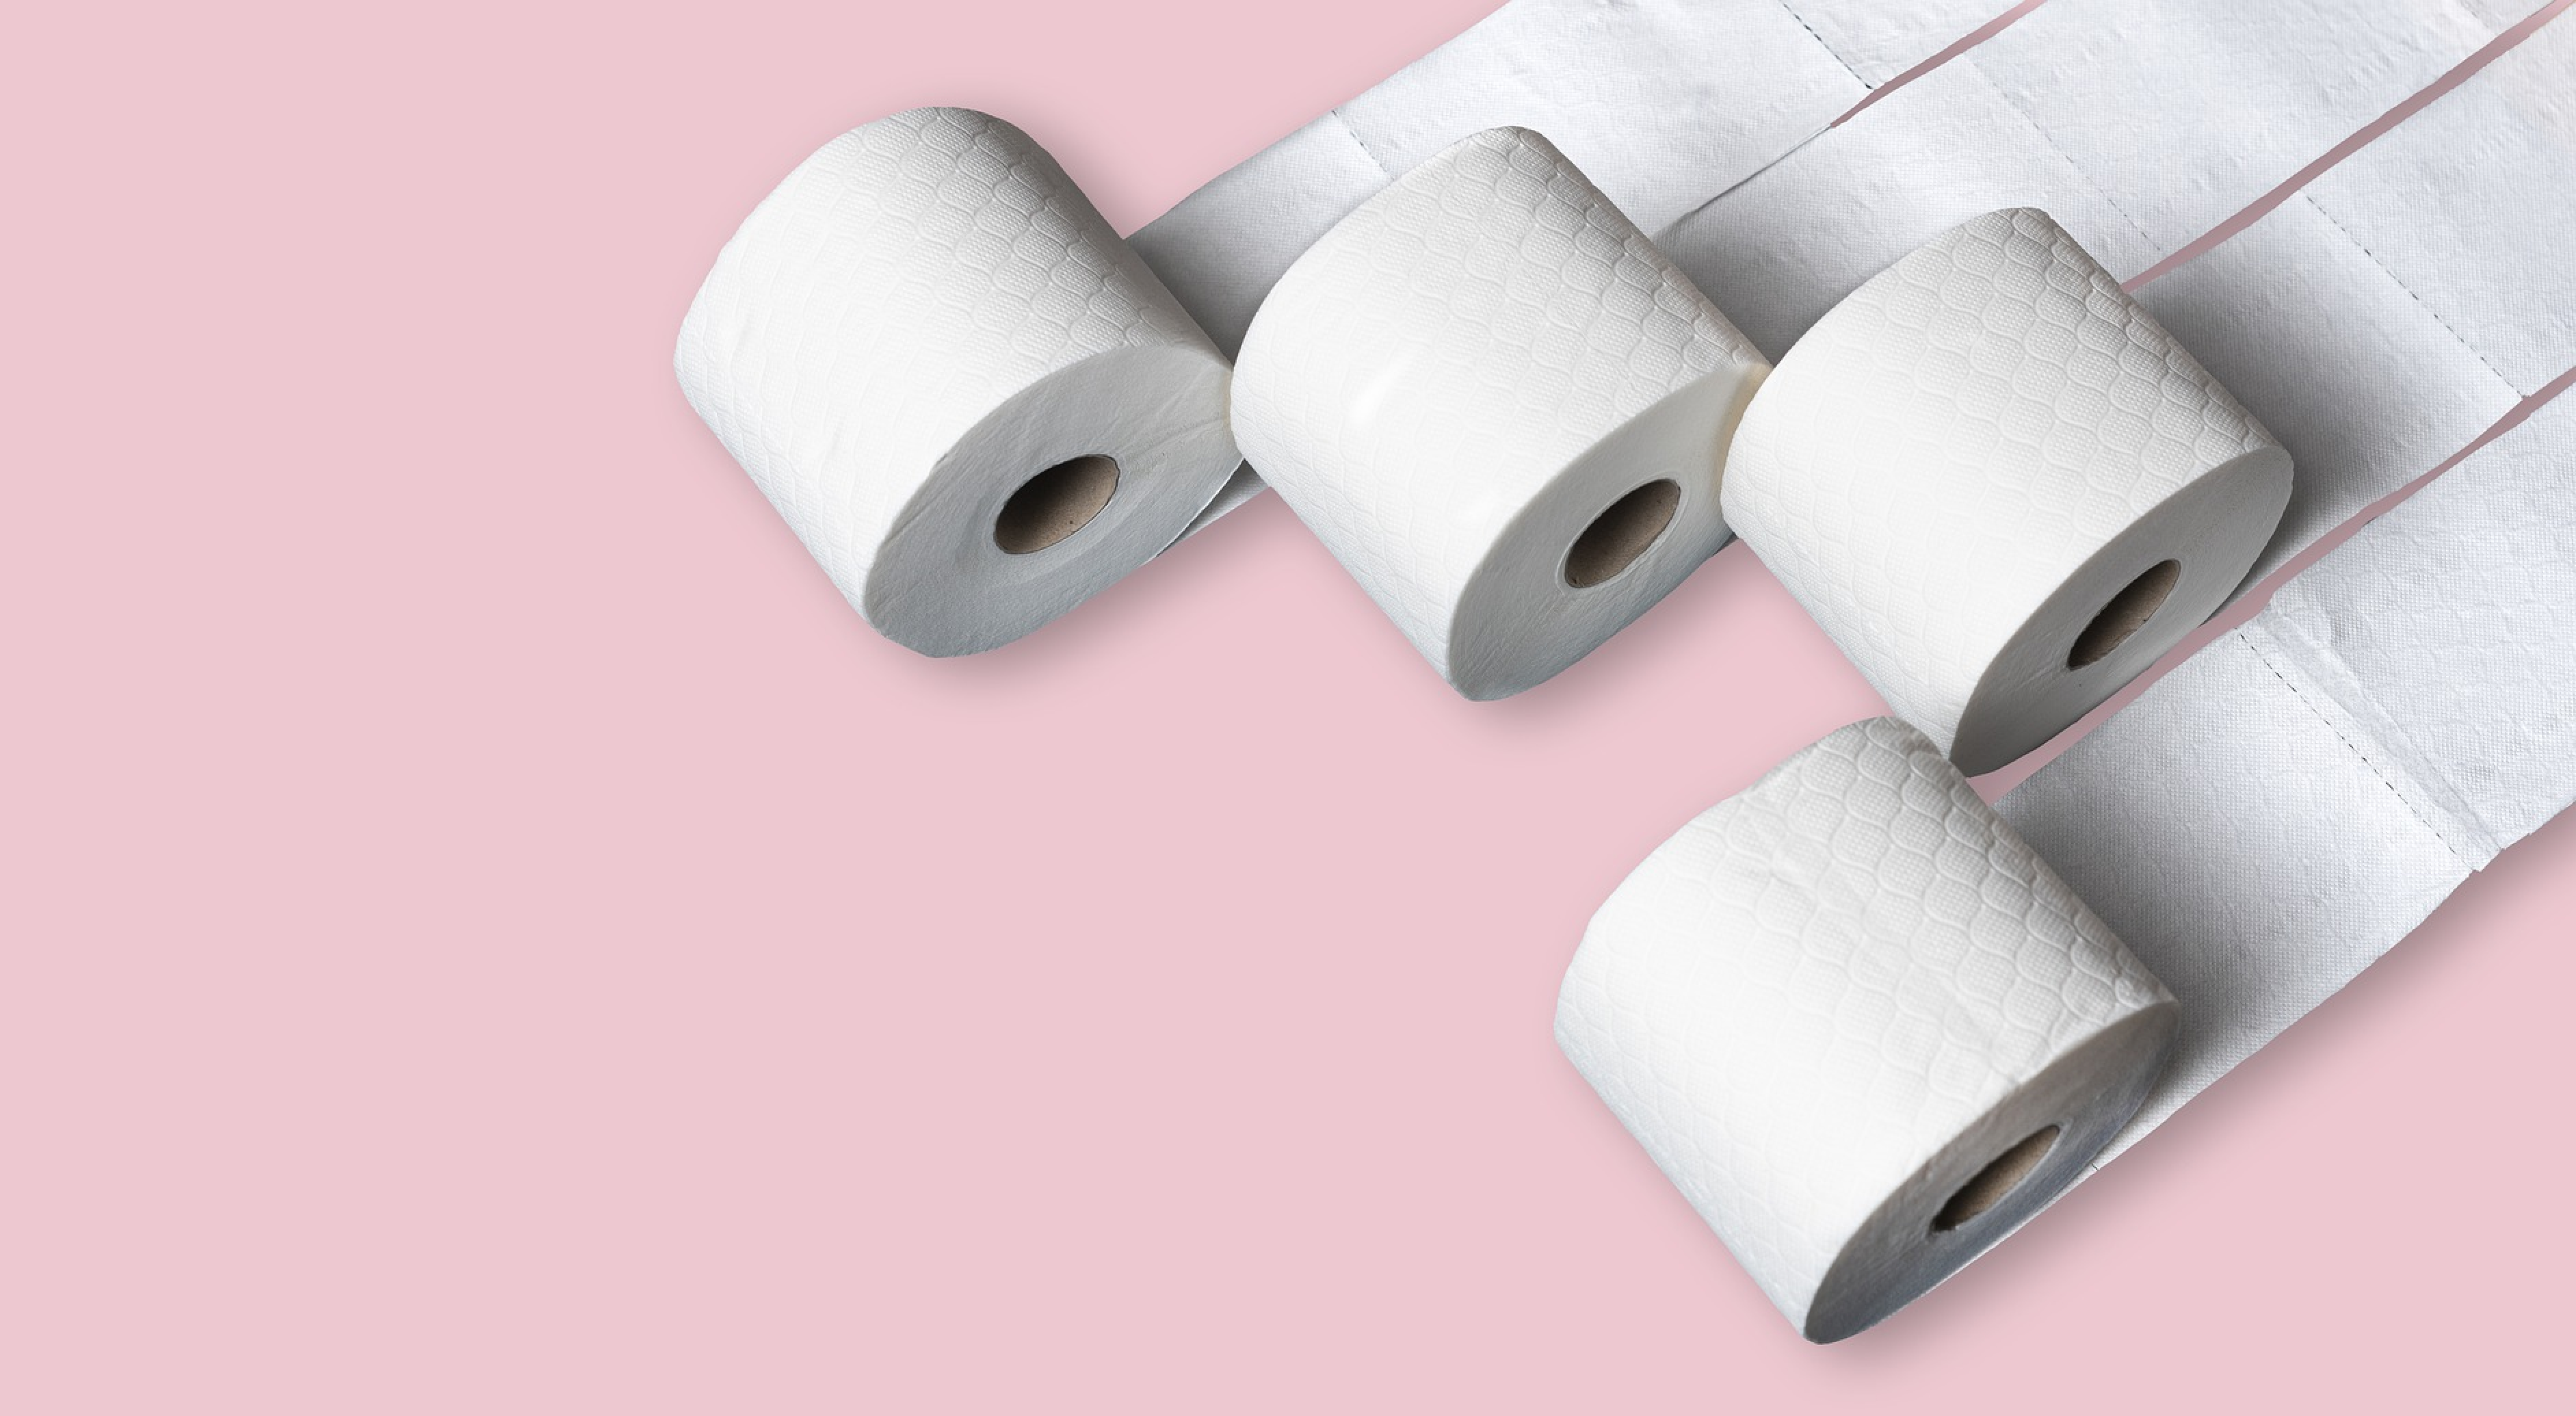 Mehrere Rollen Toilettenpapier vor pinkem Hintergrund.